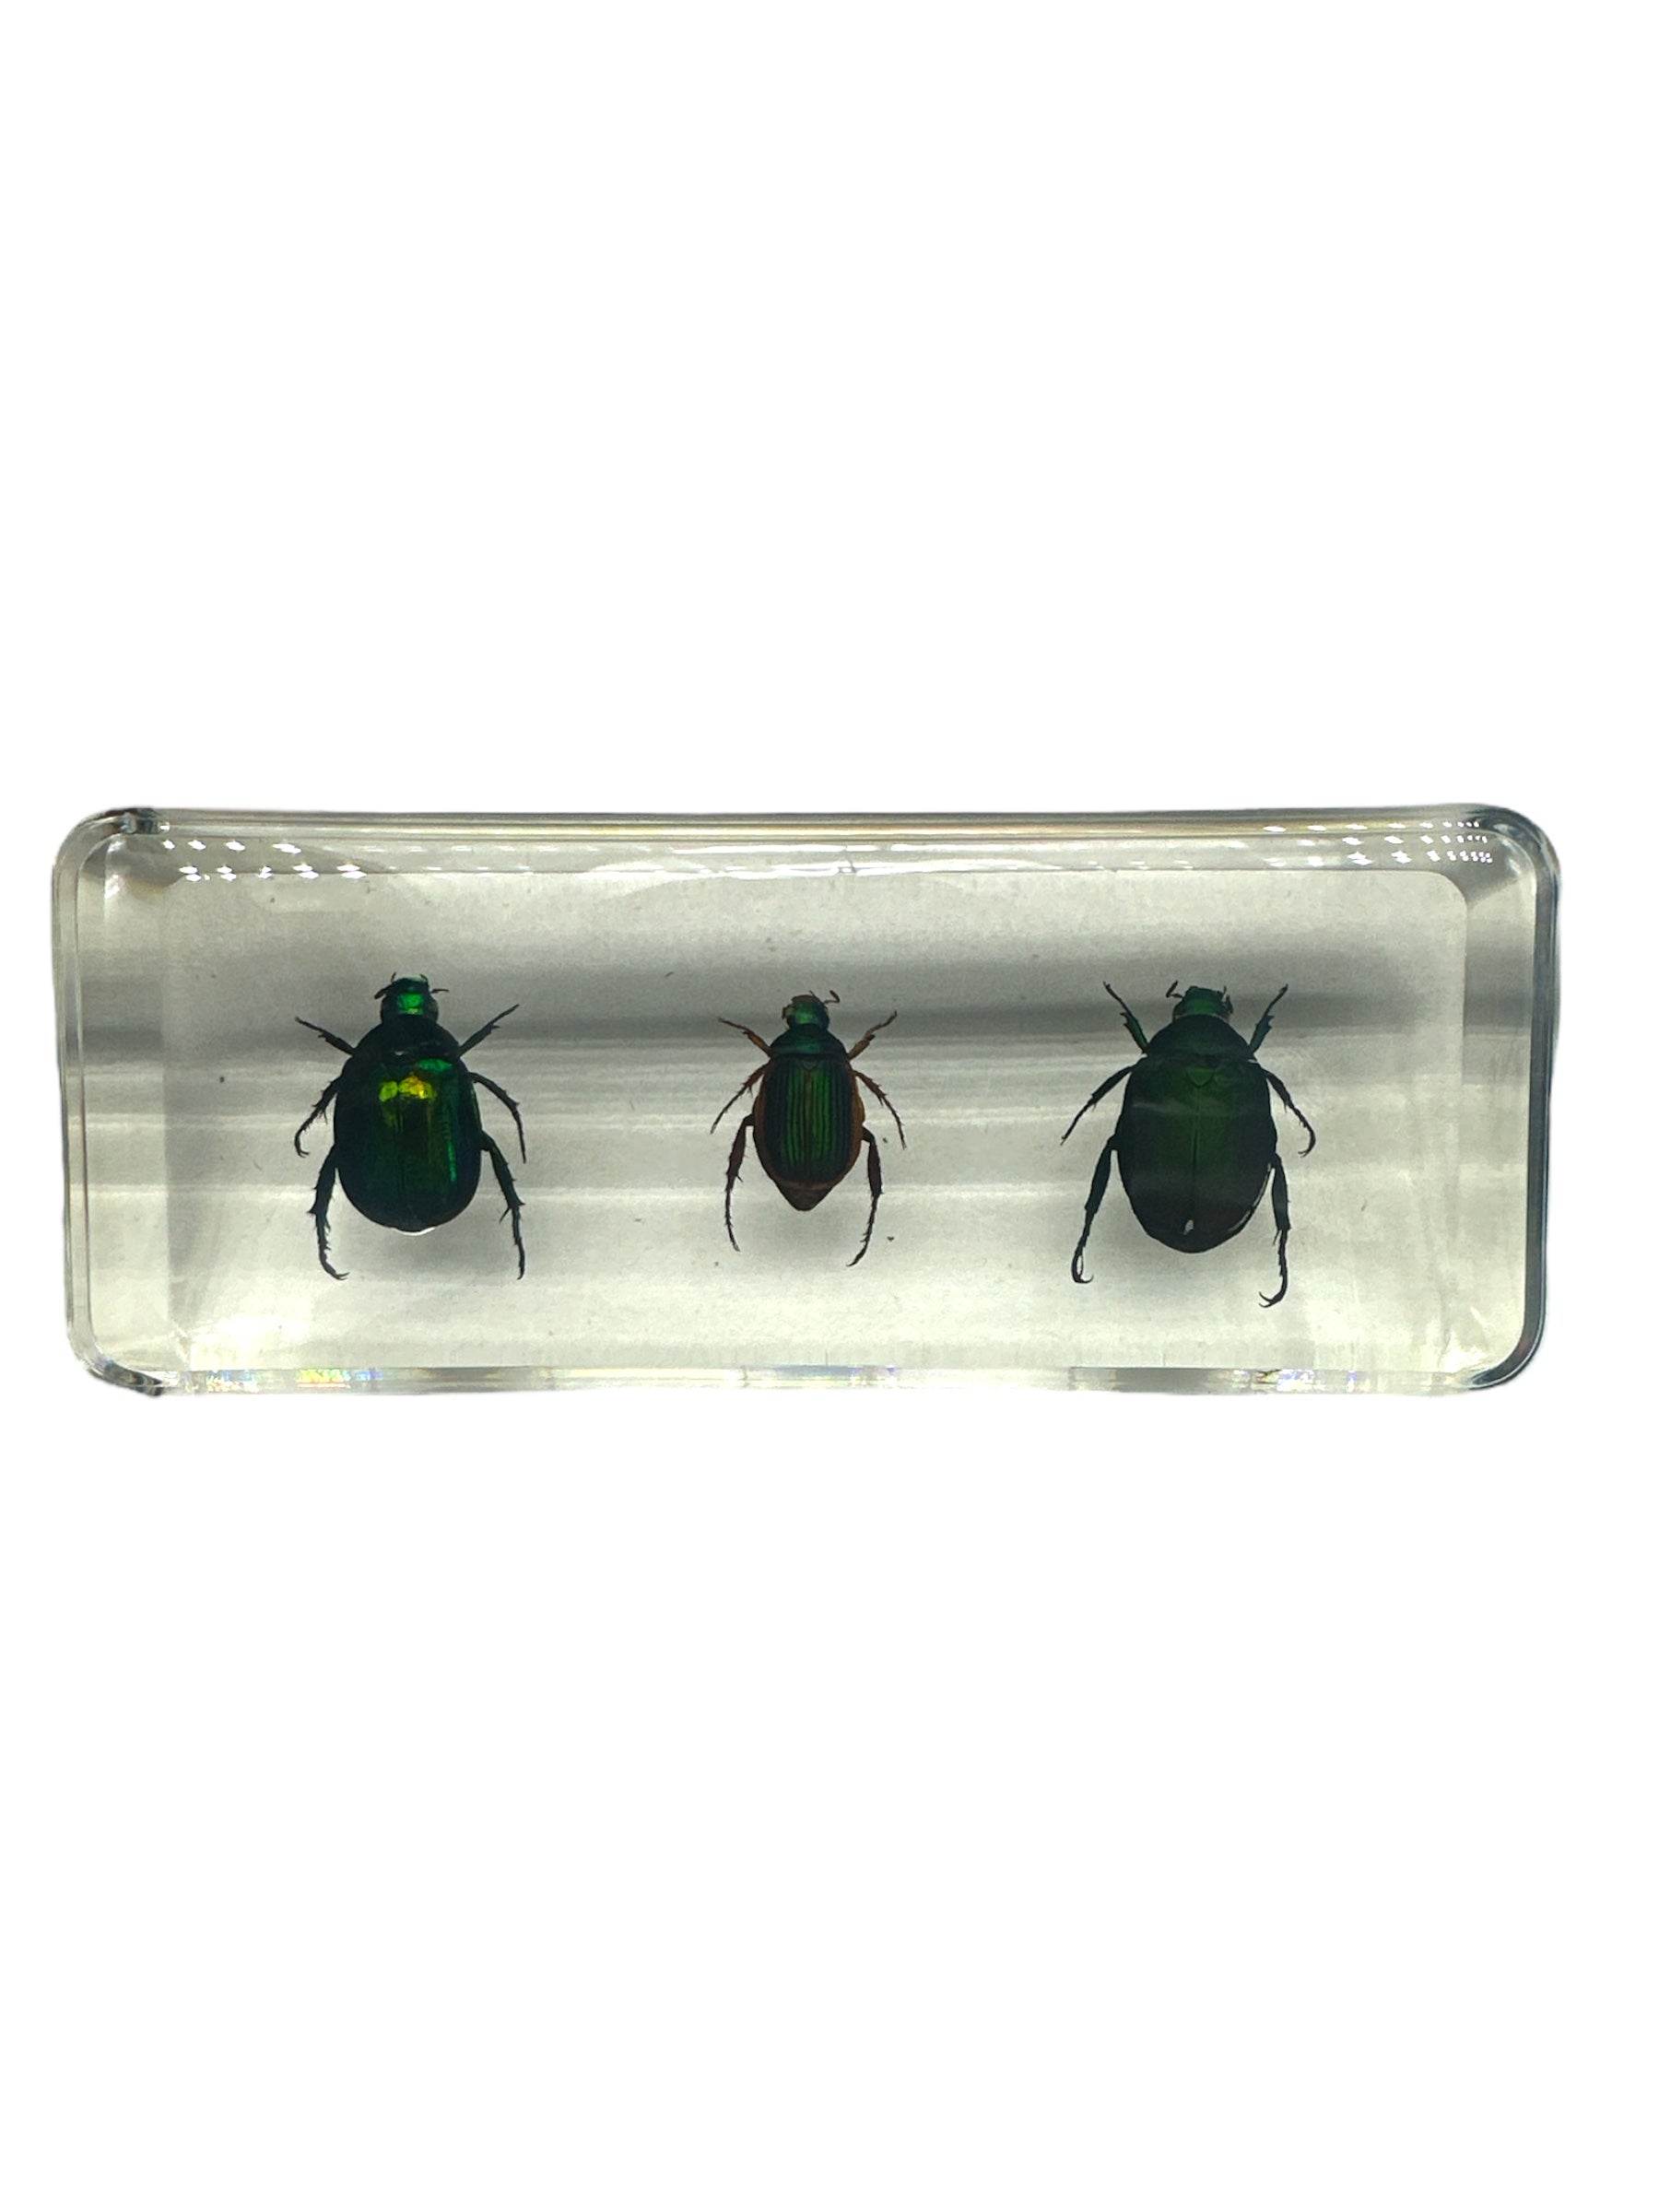 3 Stag Beetles - Specimen In Resin